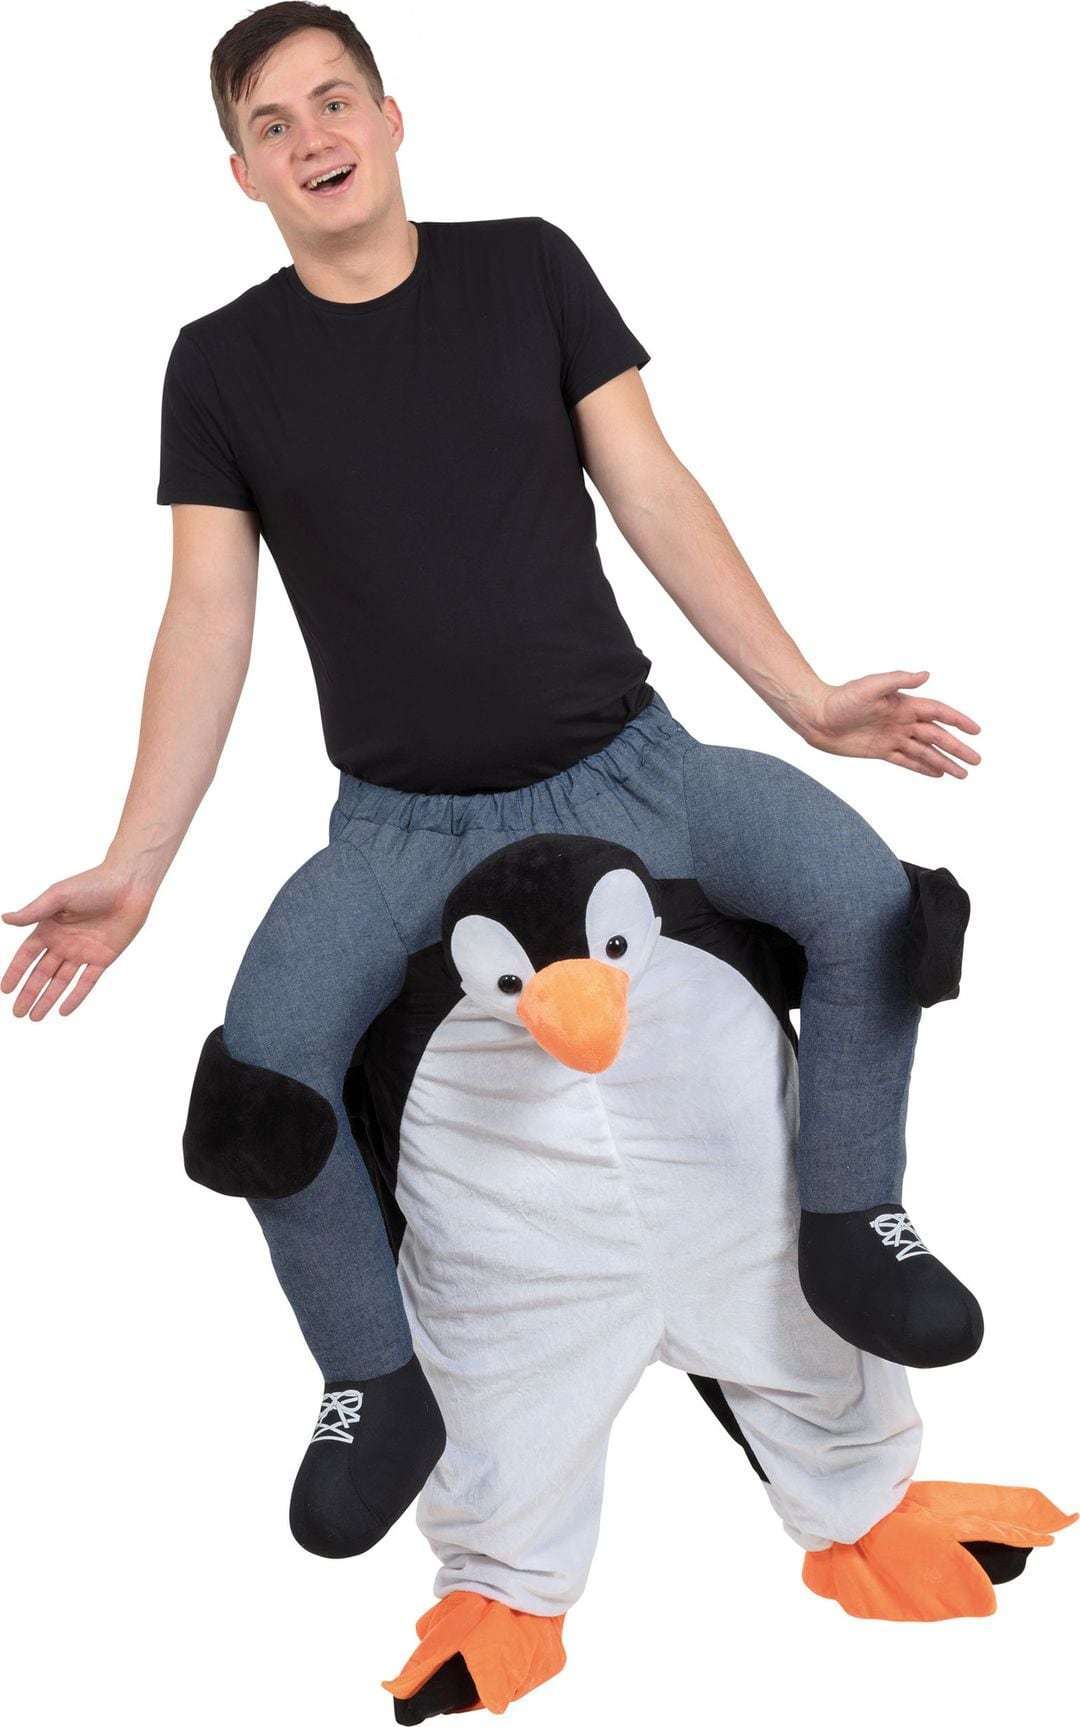 bereden instap kostuum op de rug van een pinguin zitten